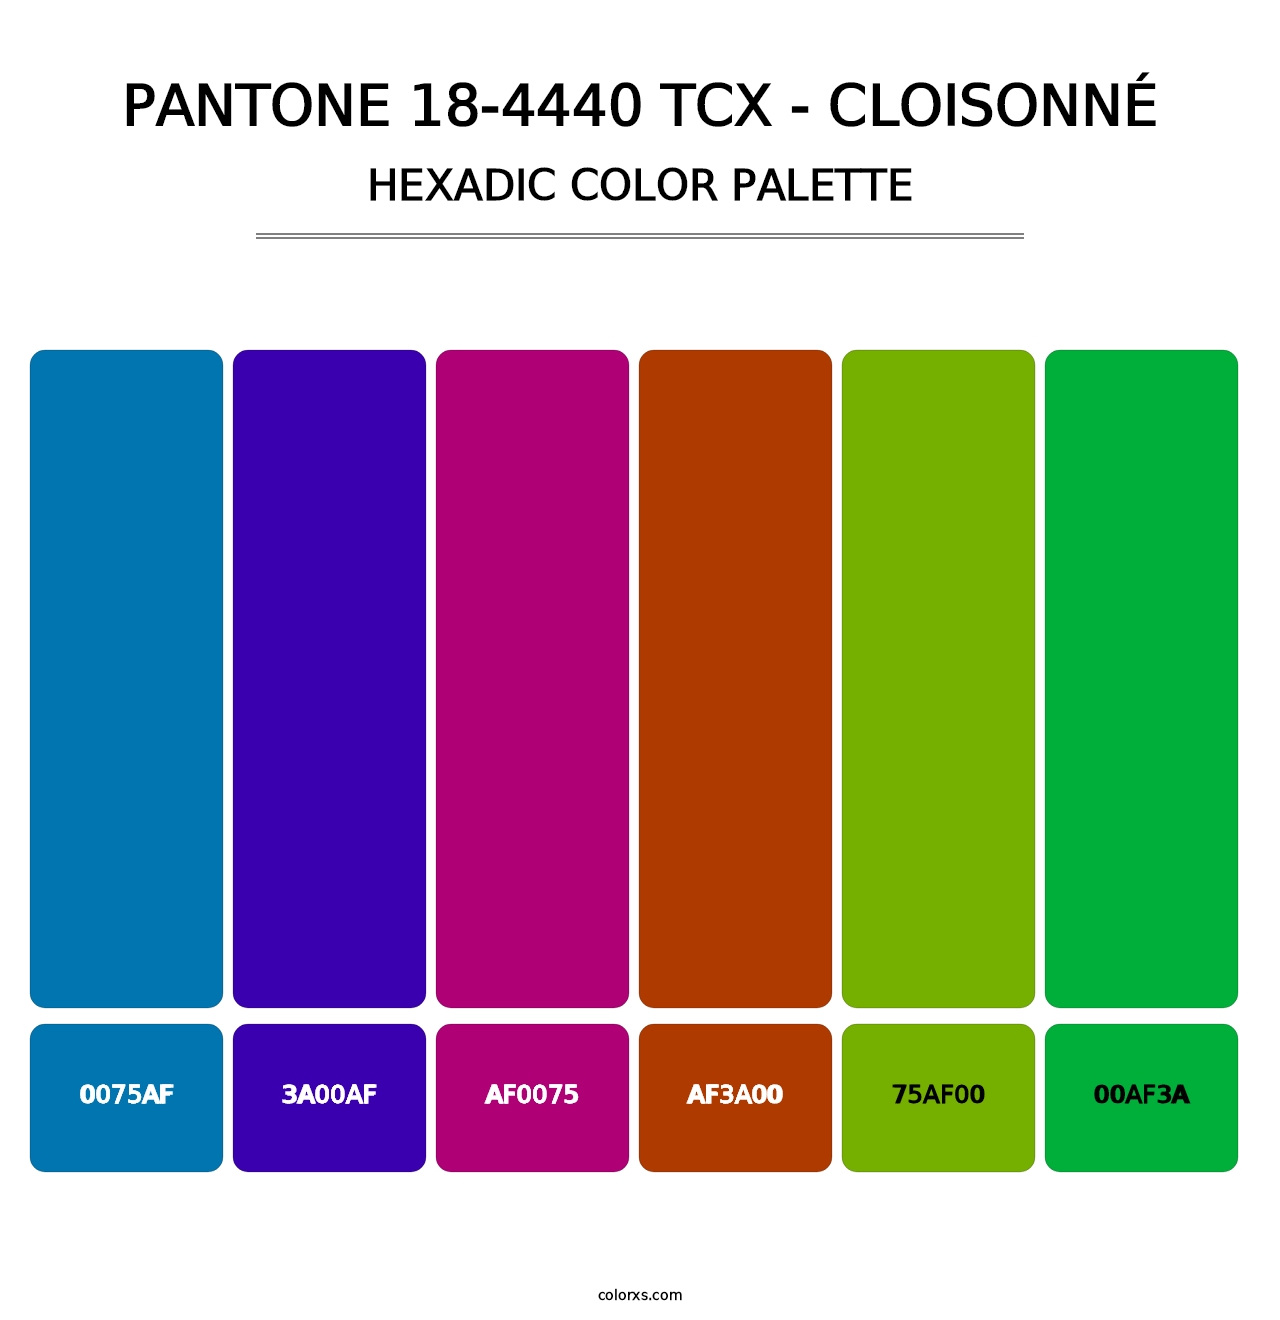 PANTONE 18-4440 TCX - Cloisonné - Hexadic Color Palette